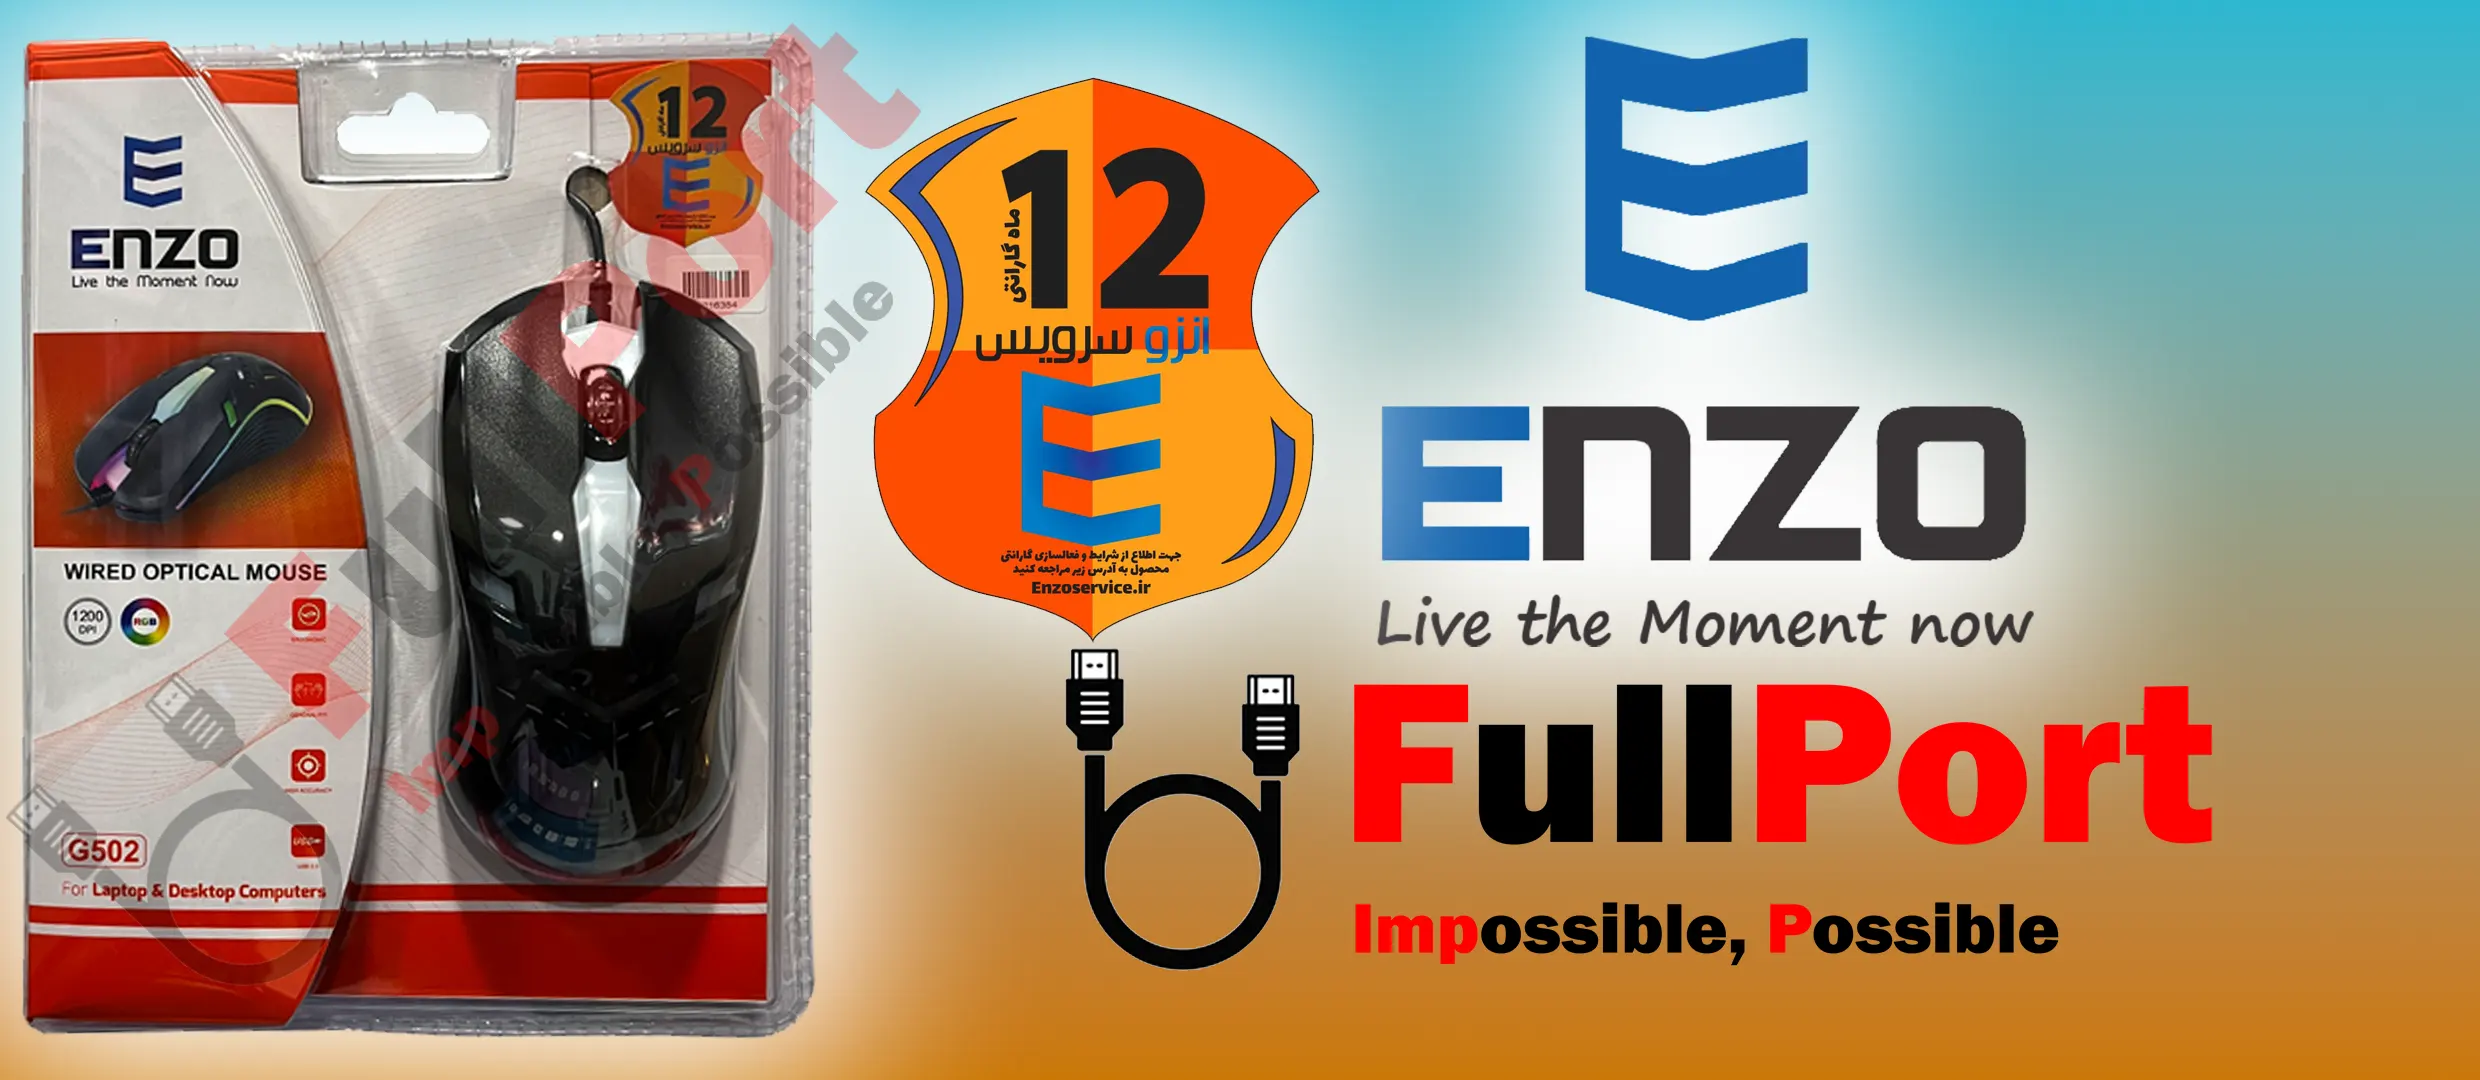 خرید اینترنتی موس سیم دار انزو | ENZO مدل G502 با گارانتی انزو سرویس از فروشگاه اینترنتی فول پورت